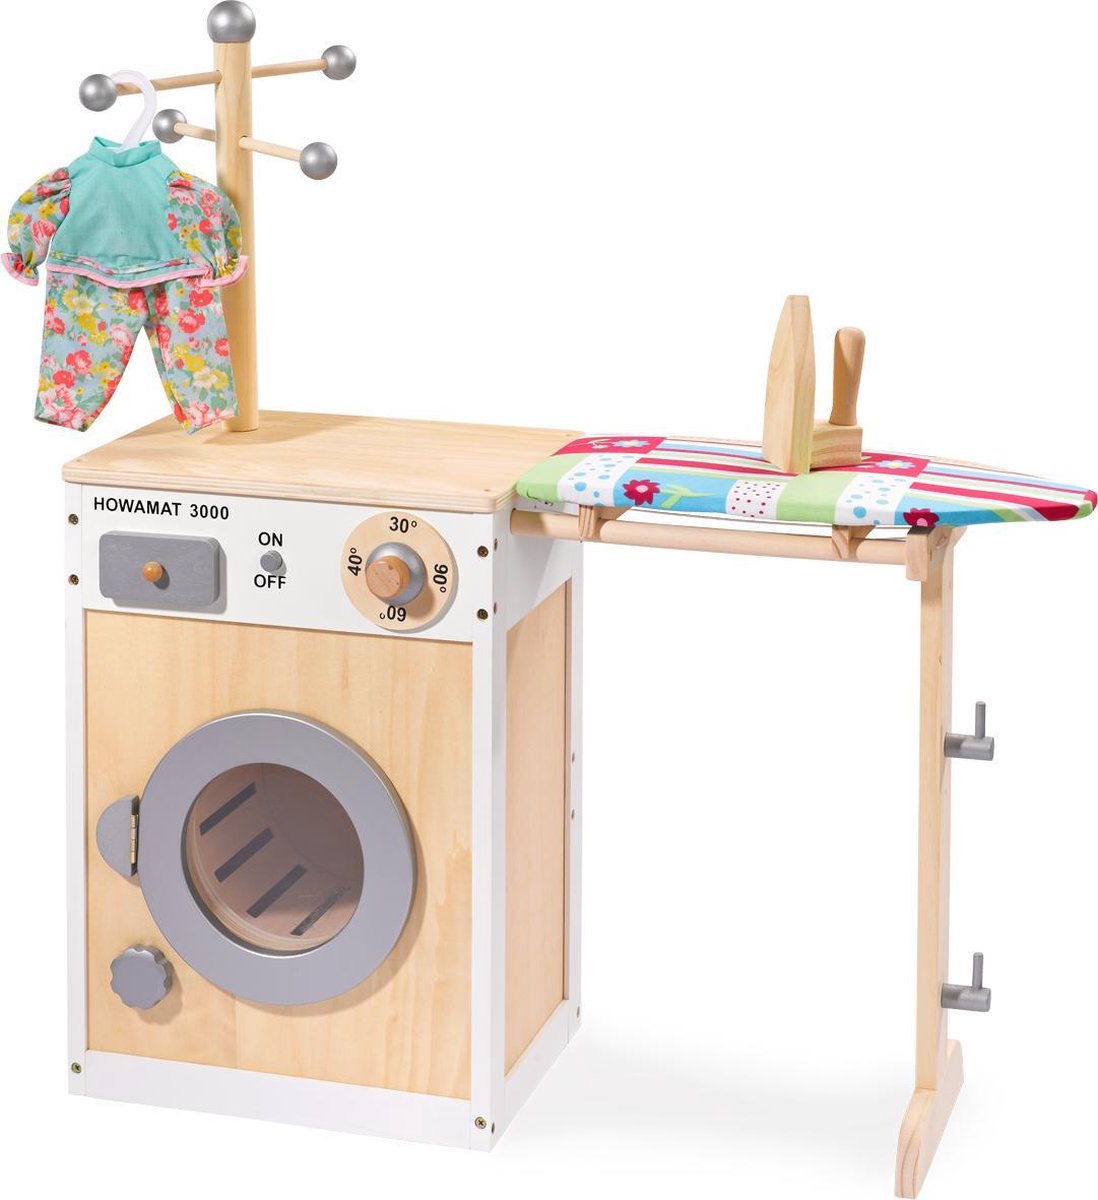 slijm Haas Neuropathie howa Houten Speelgoed Wasmachine met strijkplank, mand en strijkijzer 48141  | bol.com